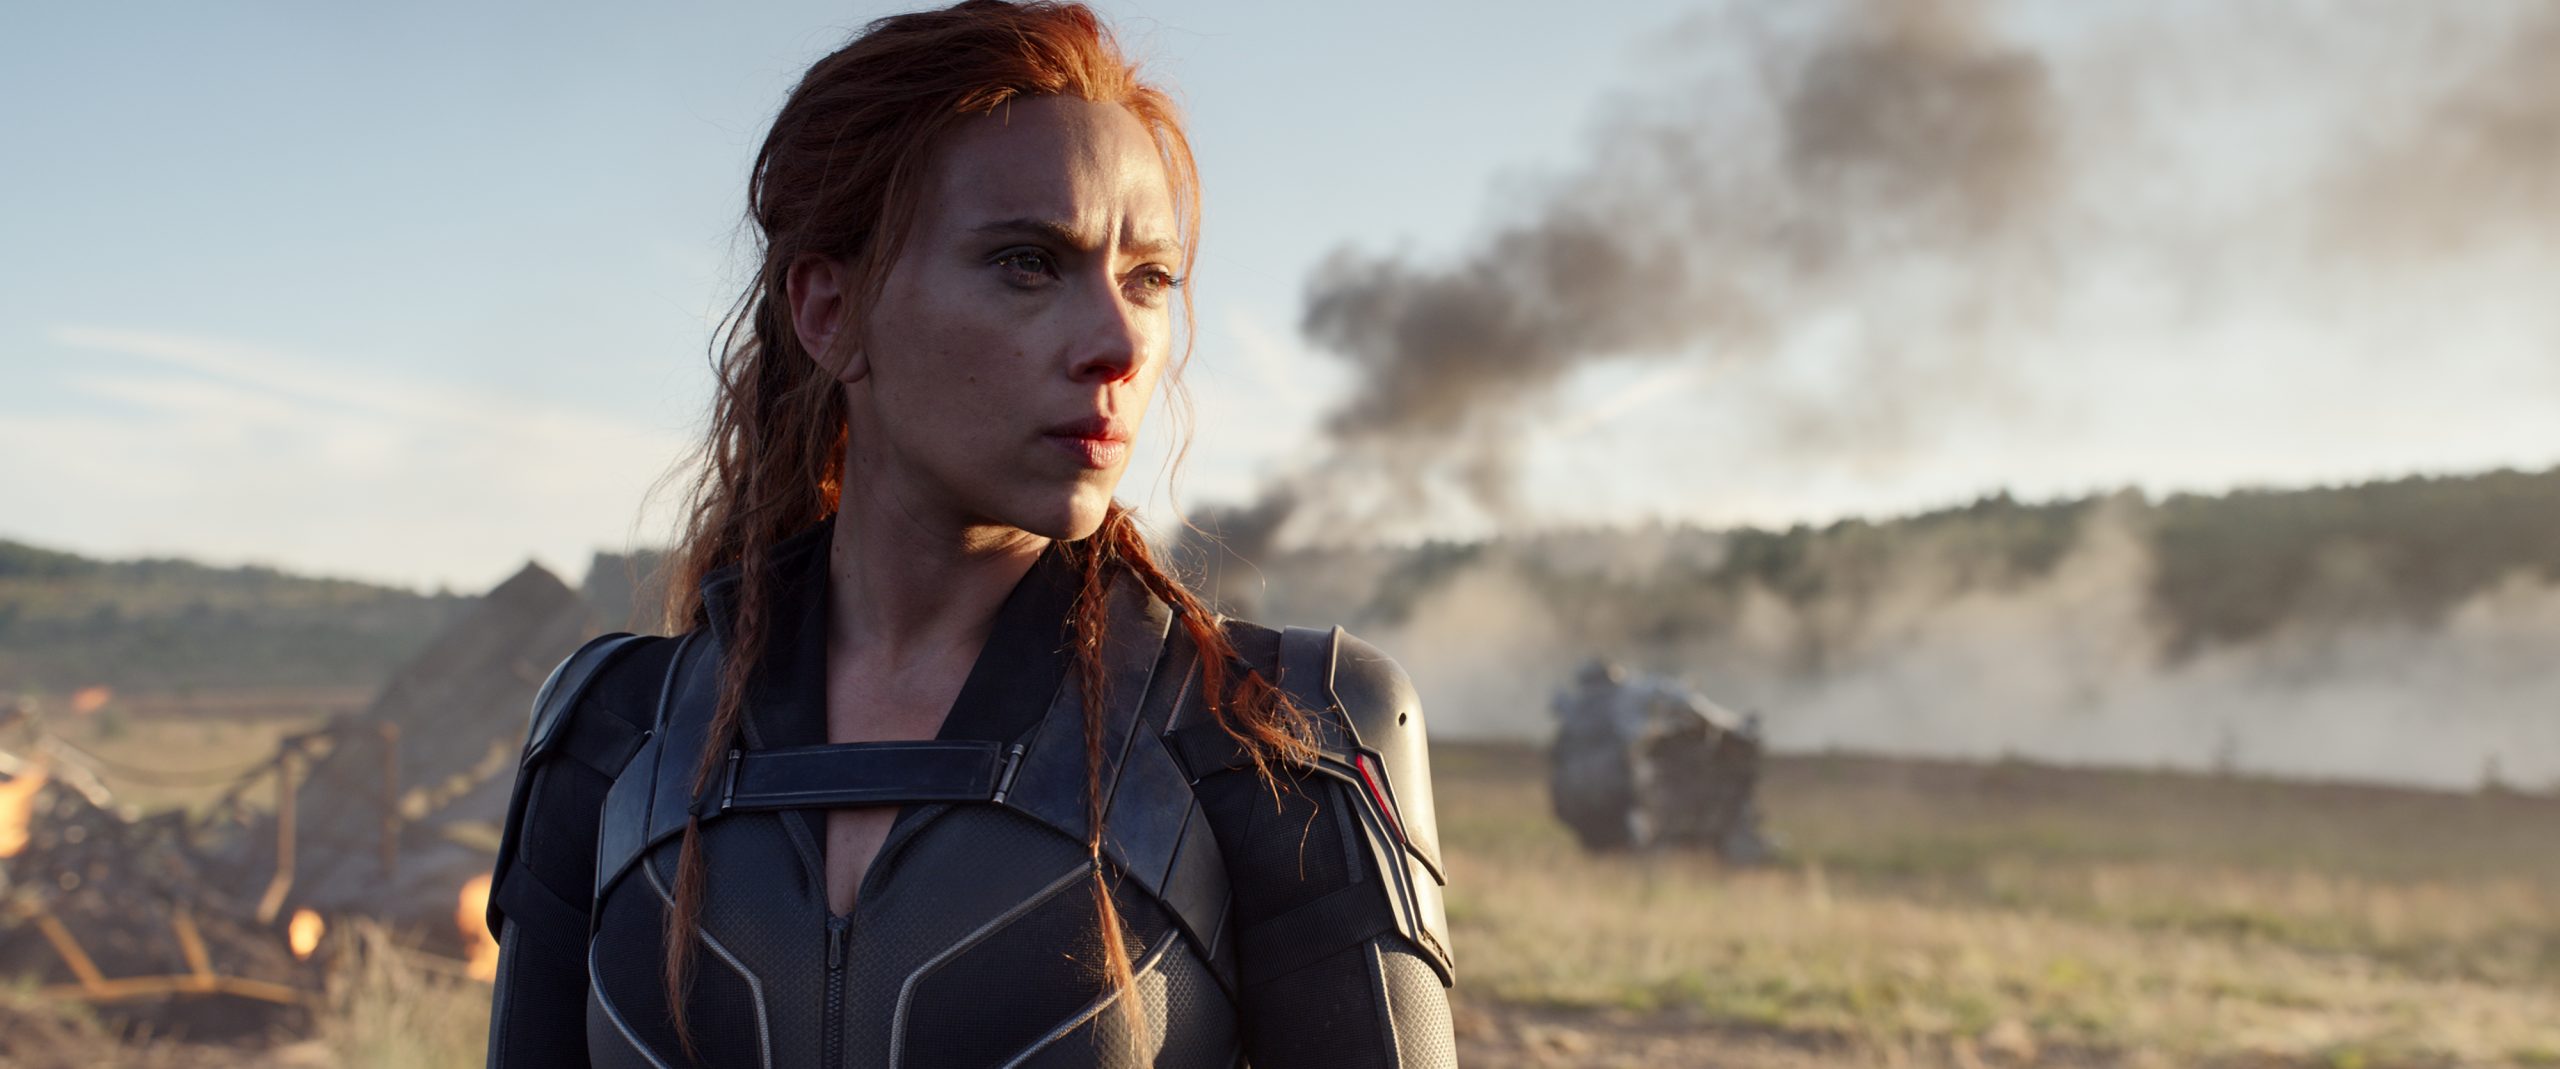 Scarlett Johansson arbeitet an einem streng geheimen Marvel-Projekt